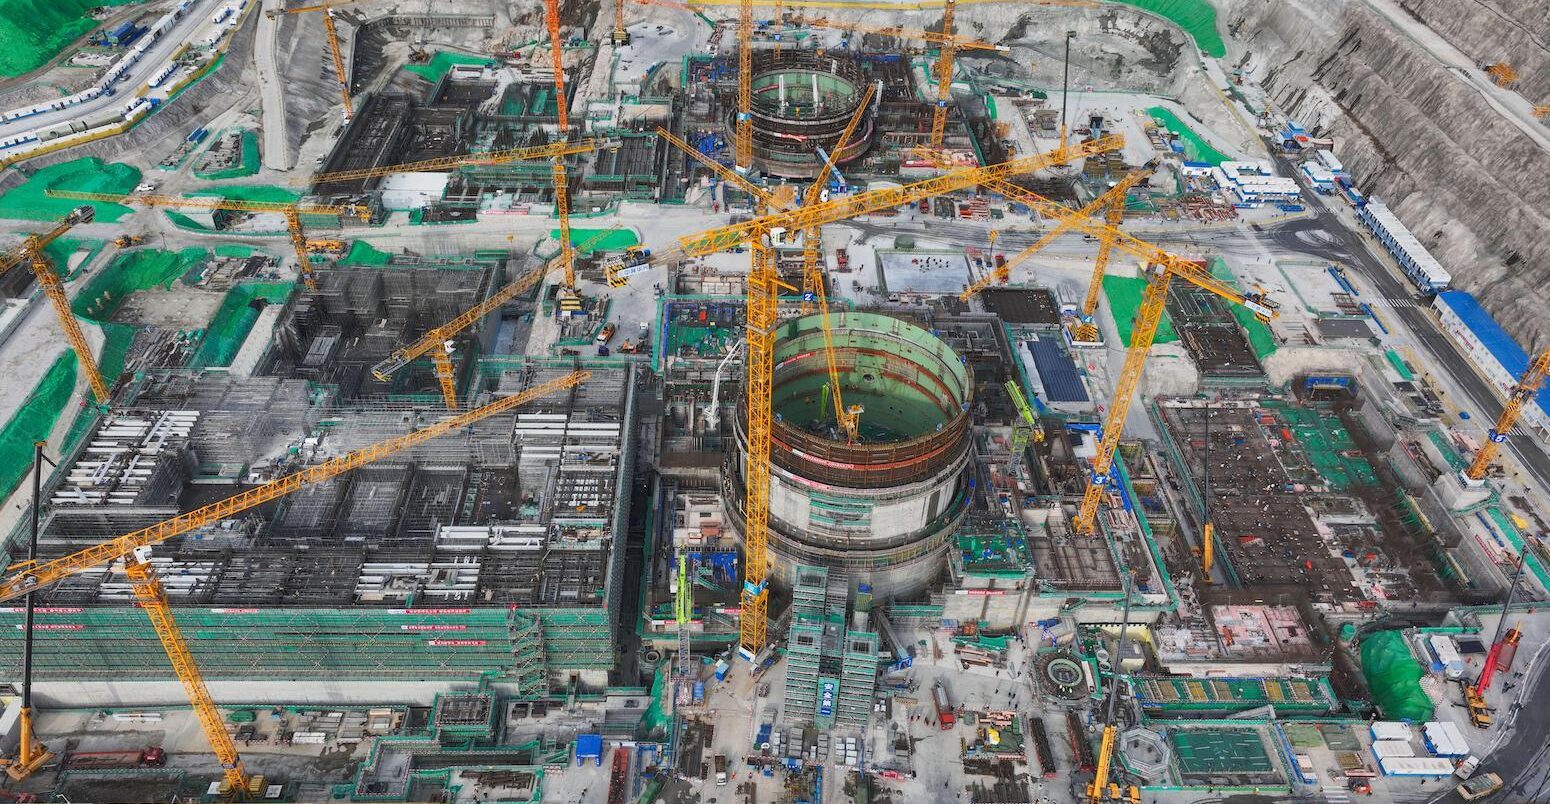 Tianwan Nuclear Power Plant in Lianyungang city, Jiangsu province, China.